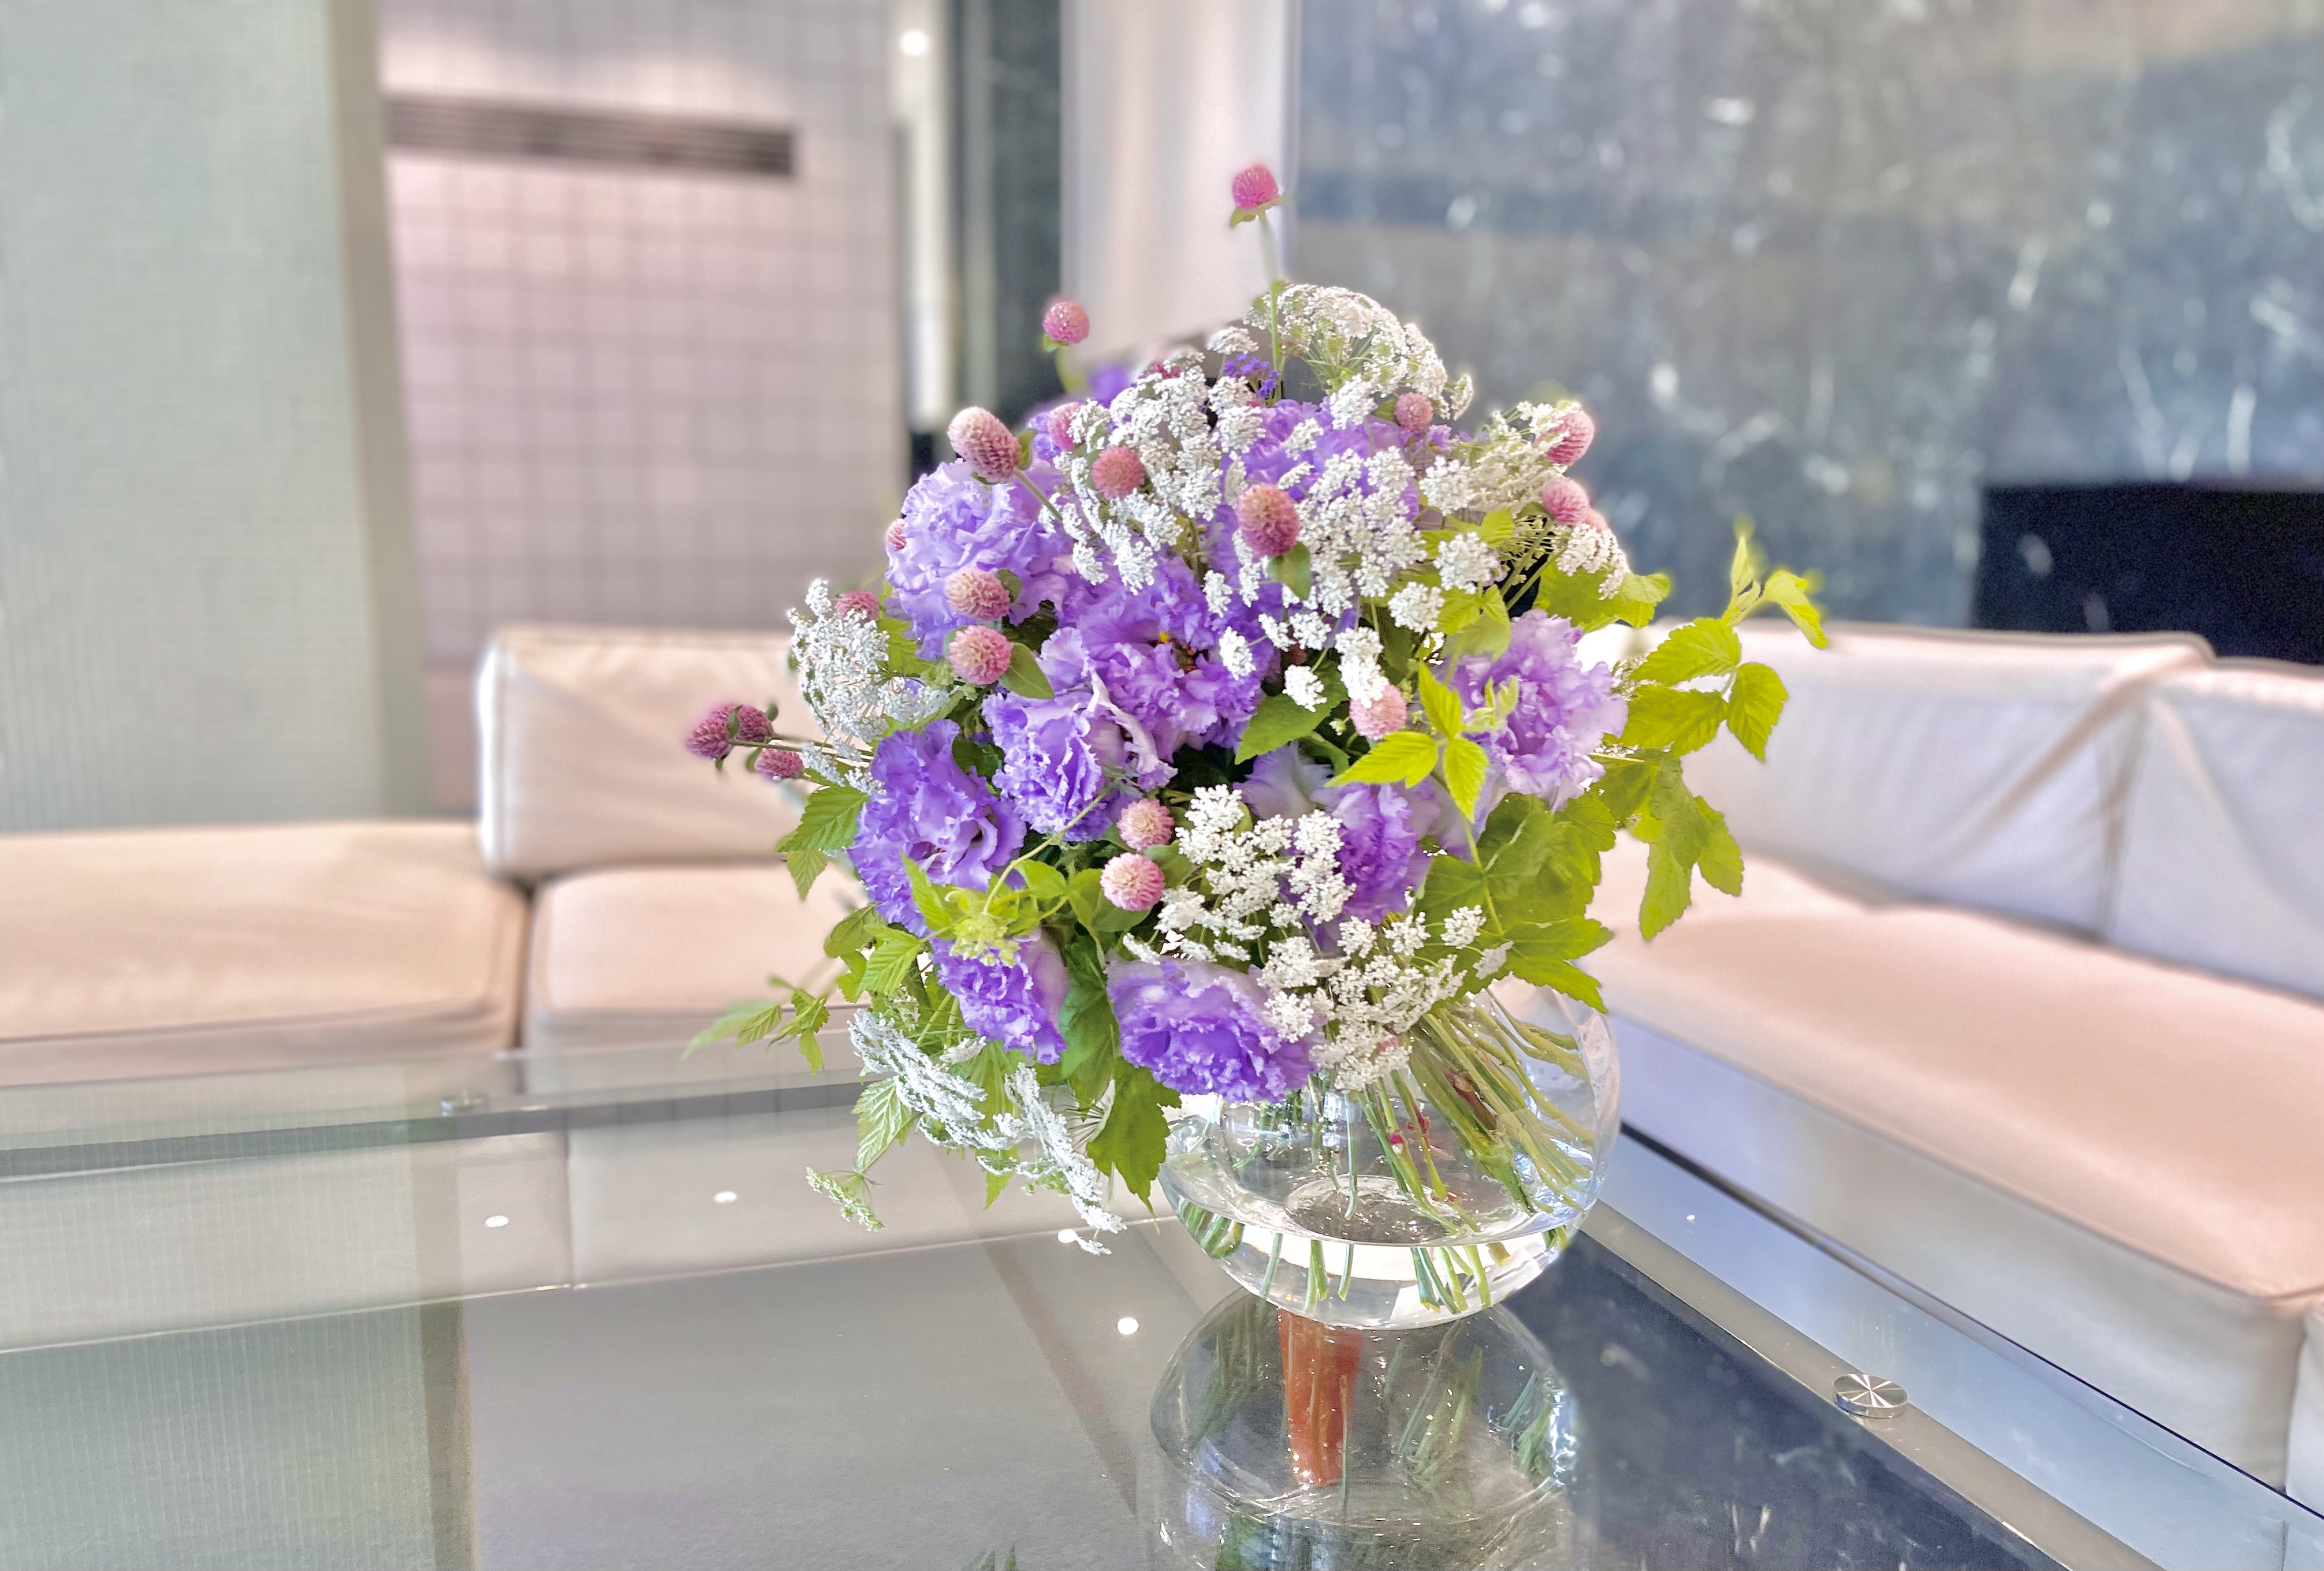 華やかさと可愛らしさで待合室を飾る8月の花 トルコギキョウ 富裕層向け資産防衛メディア 幻冬舎ゴールドオンライン